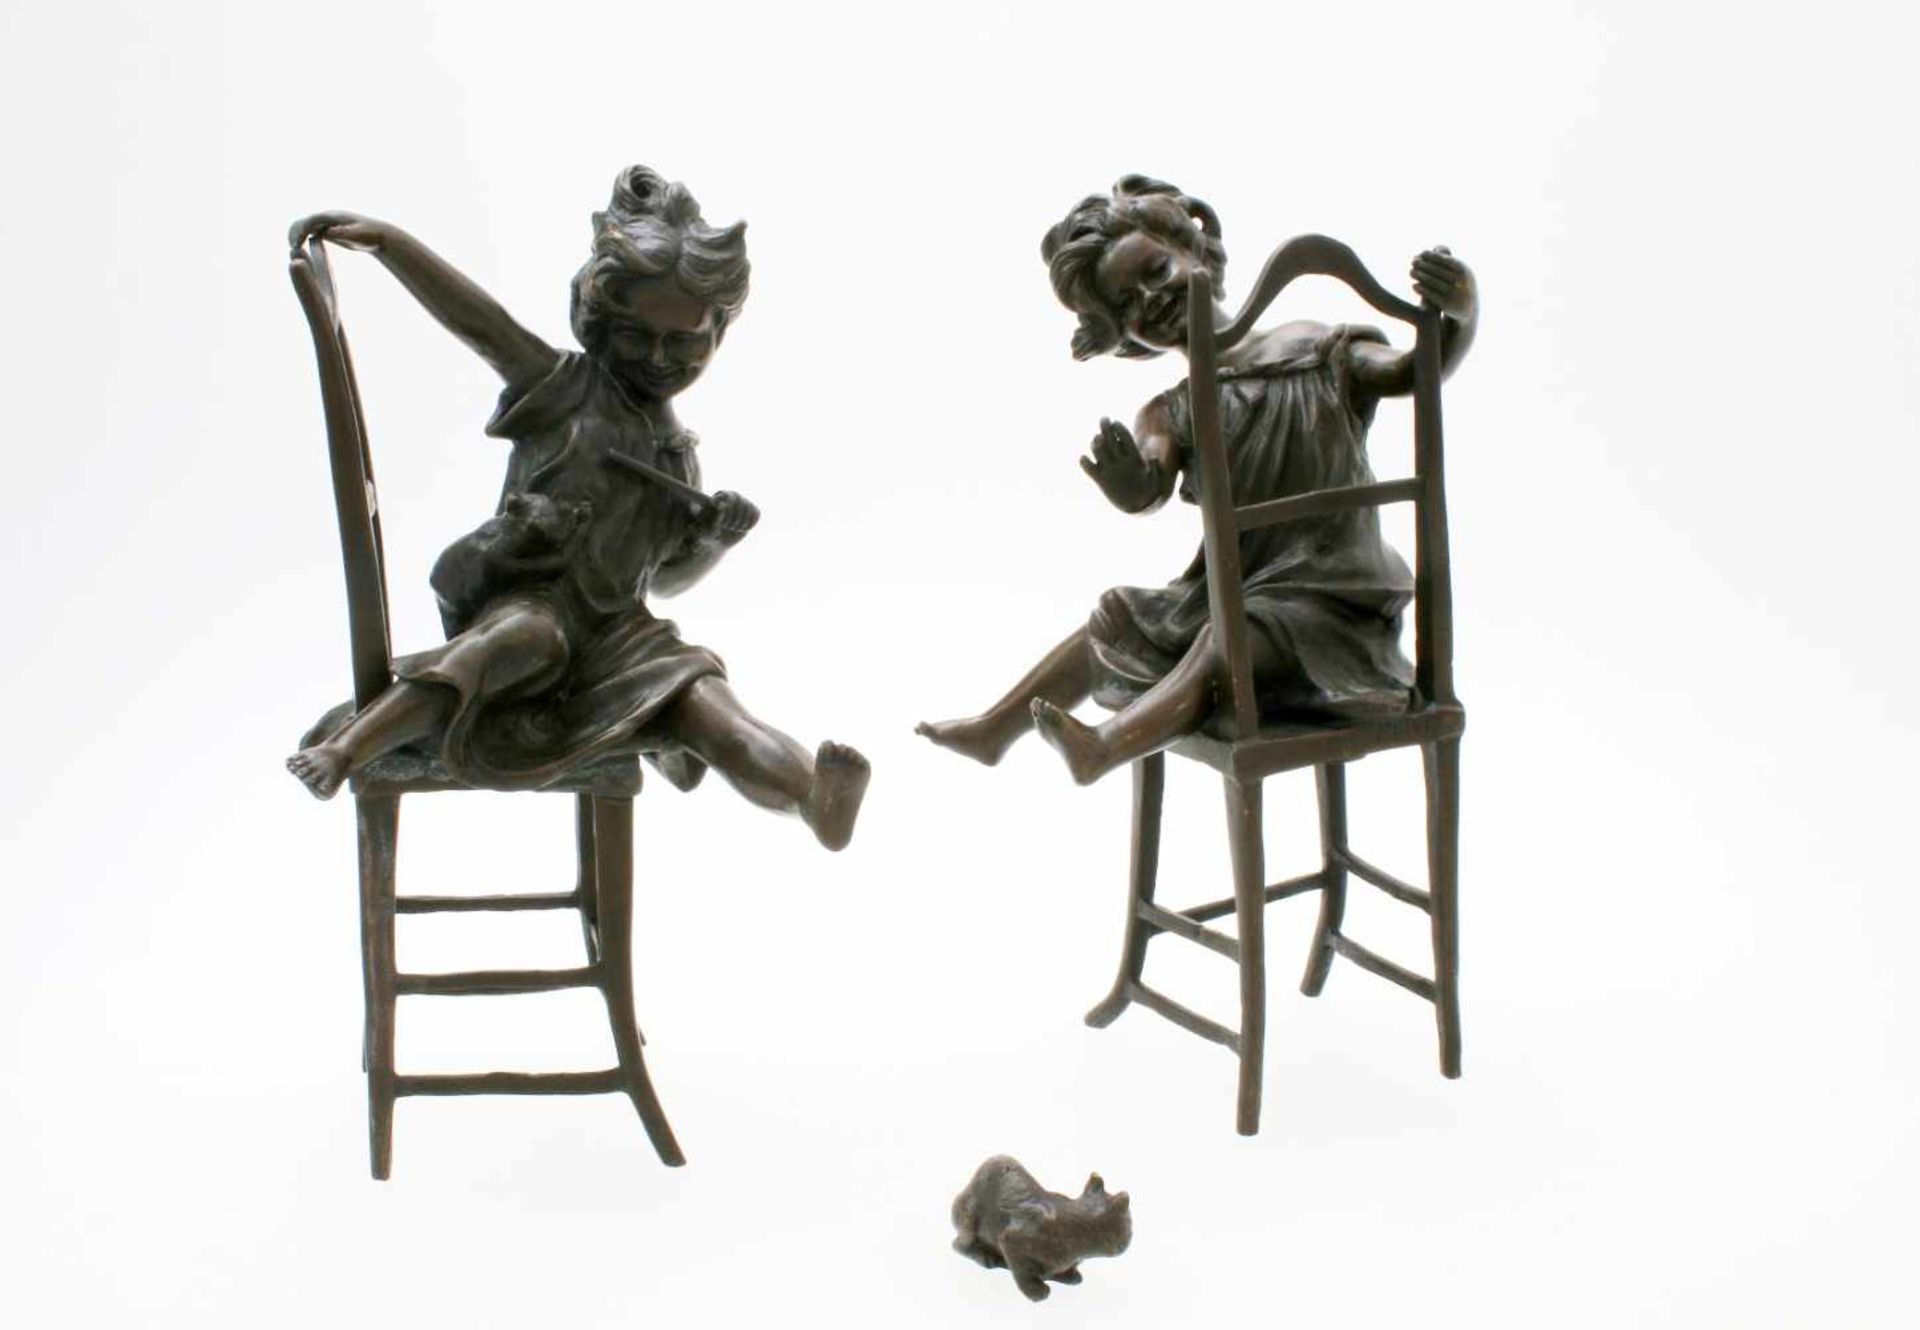 2 Bronzeskulpturen nach Franz Iffland (1862-1935, Berlin) Beide Skulpturen aus Bronze gegossen. 1x